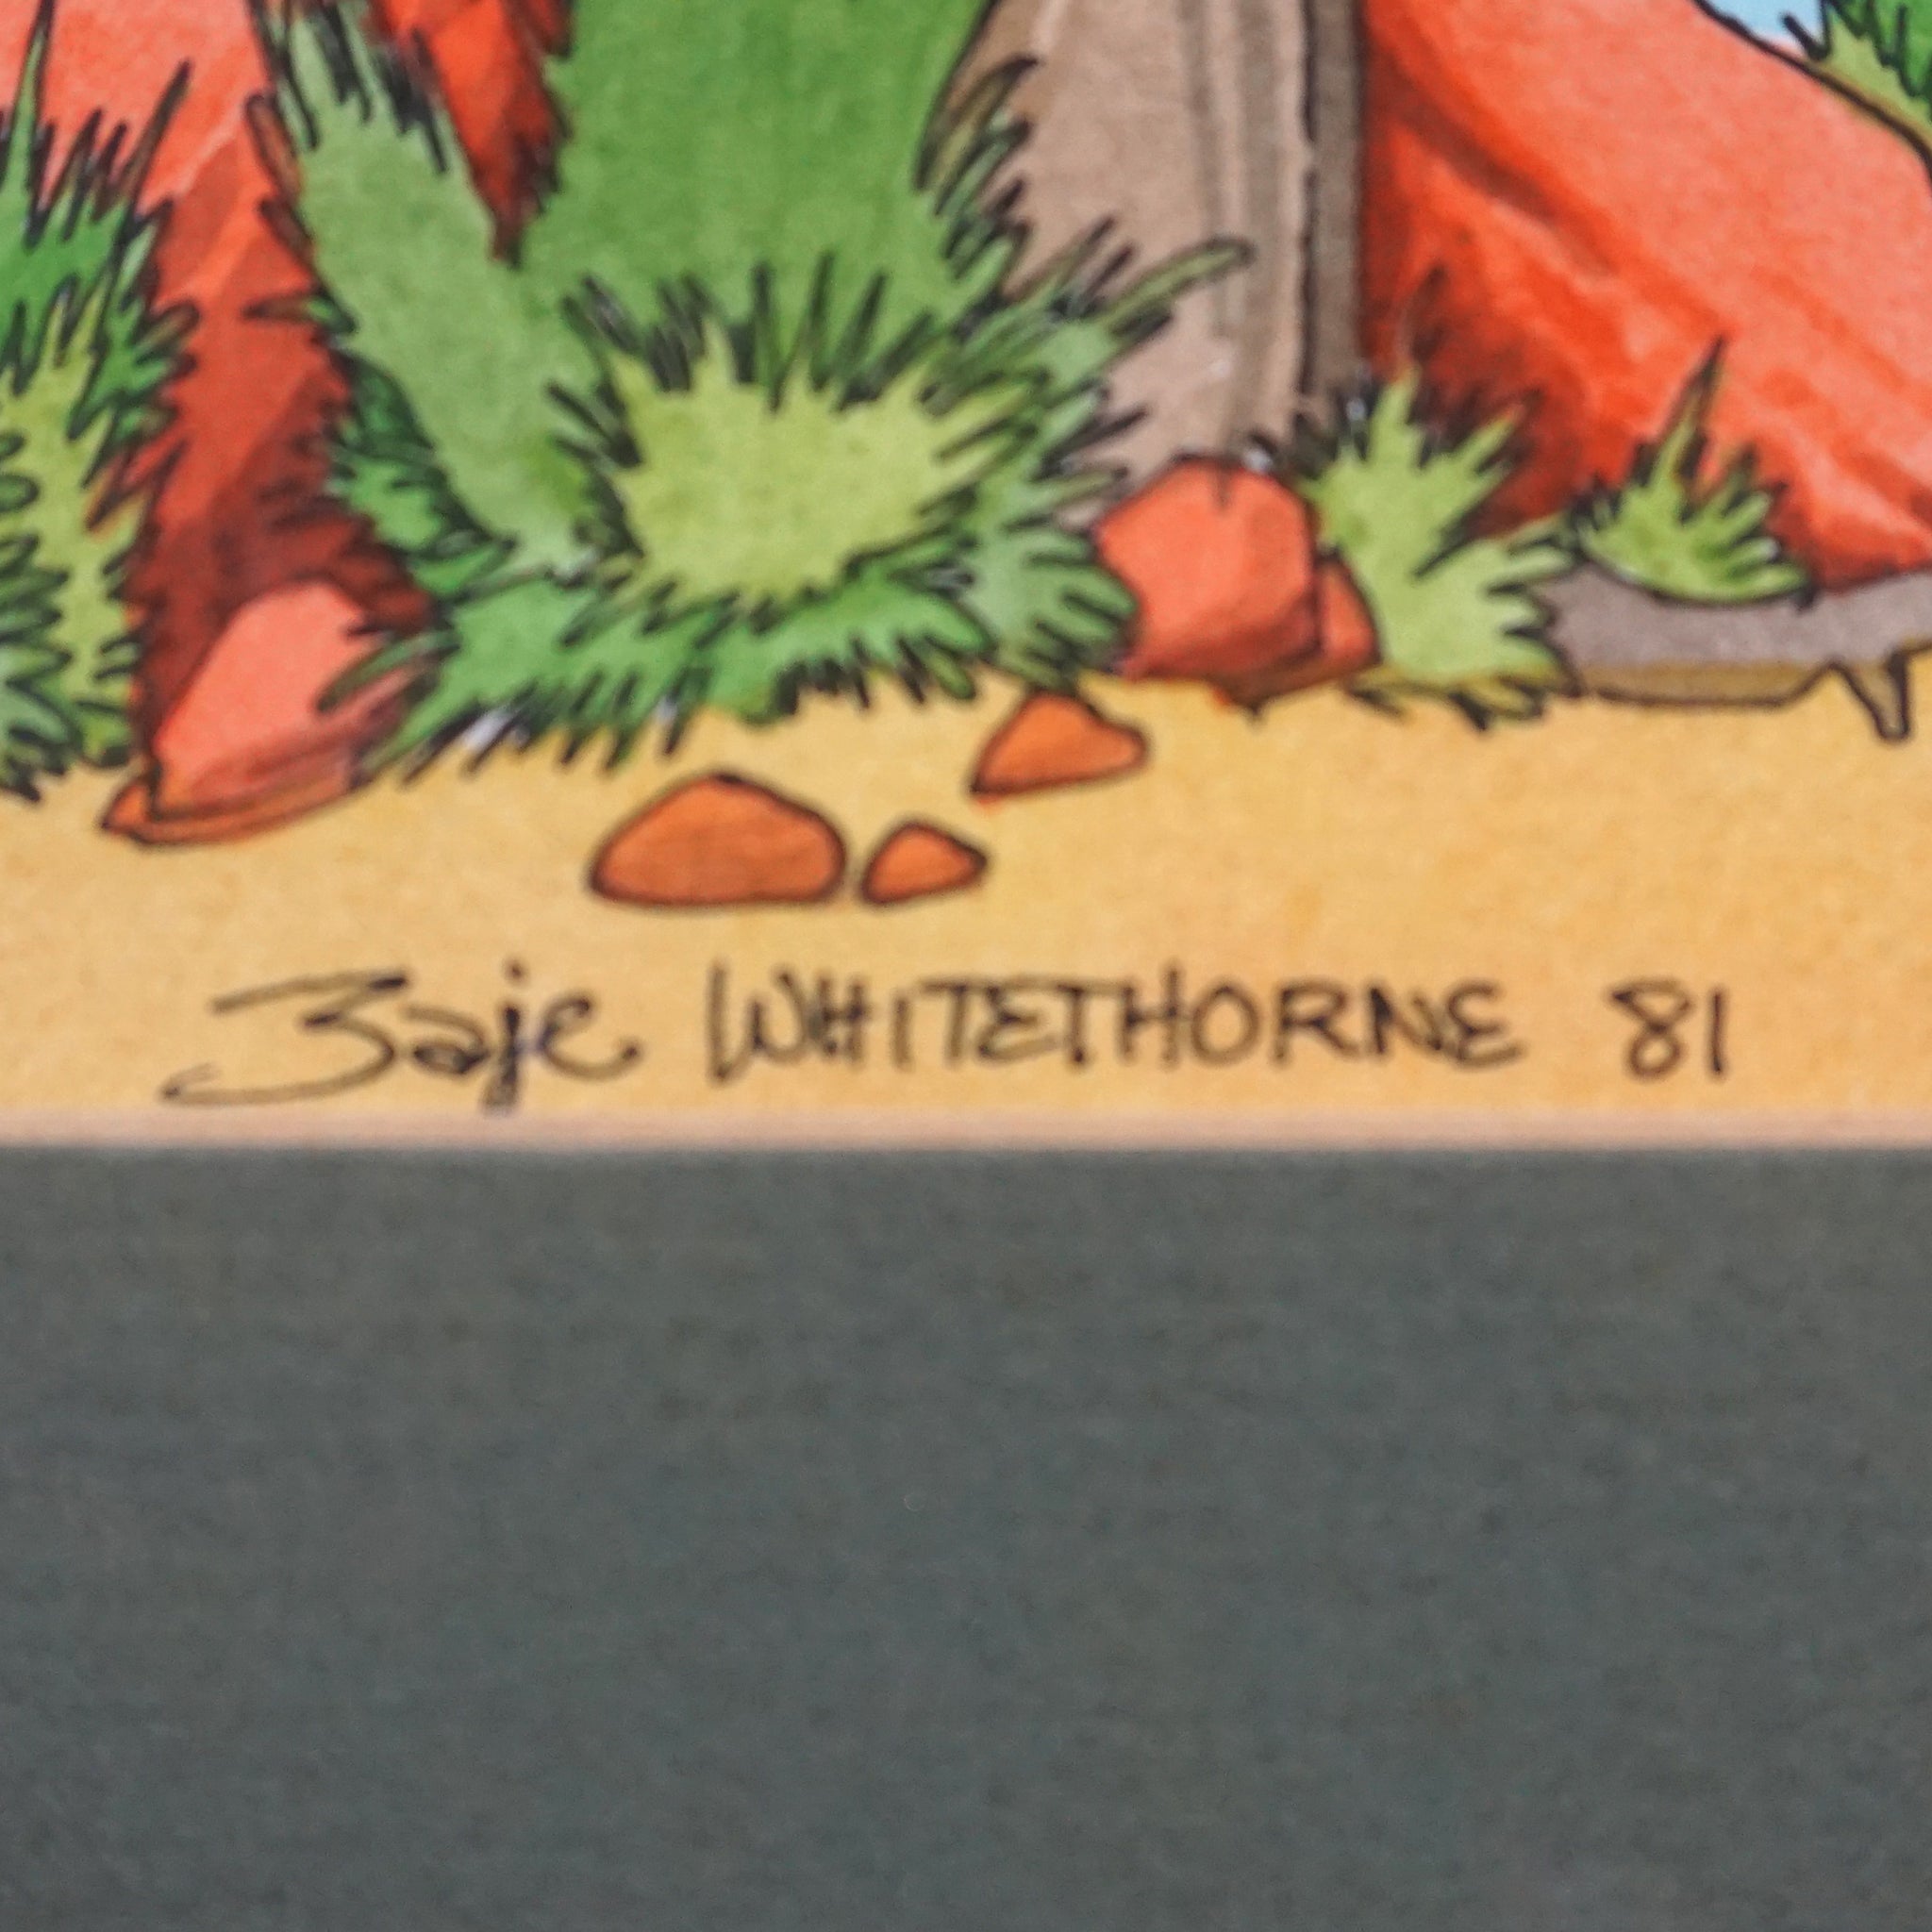 Bahe Whitethorne Sr. - Summer Afternoon